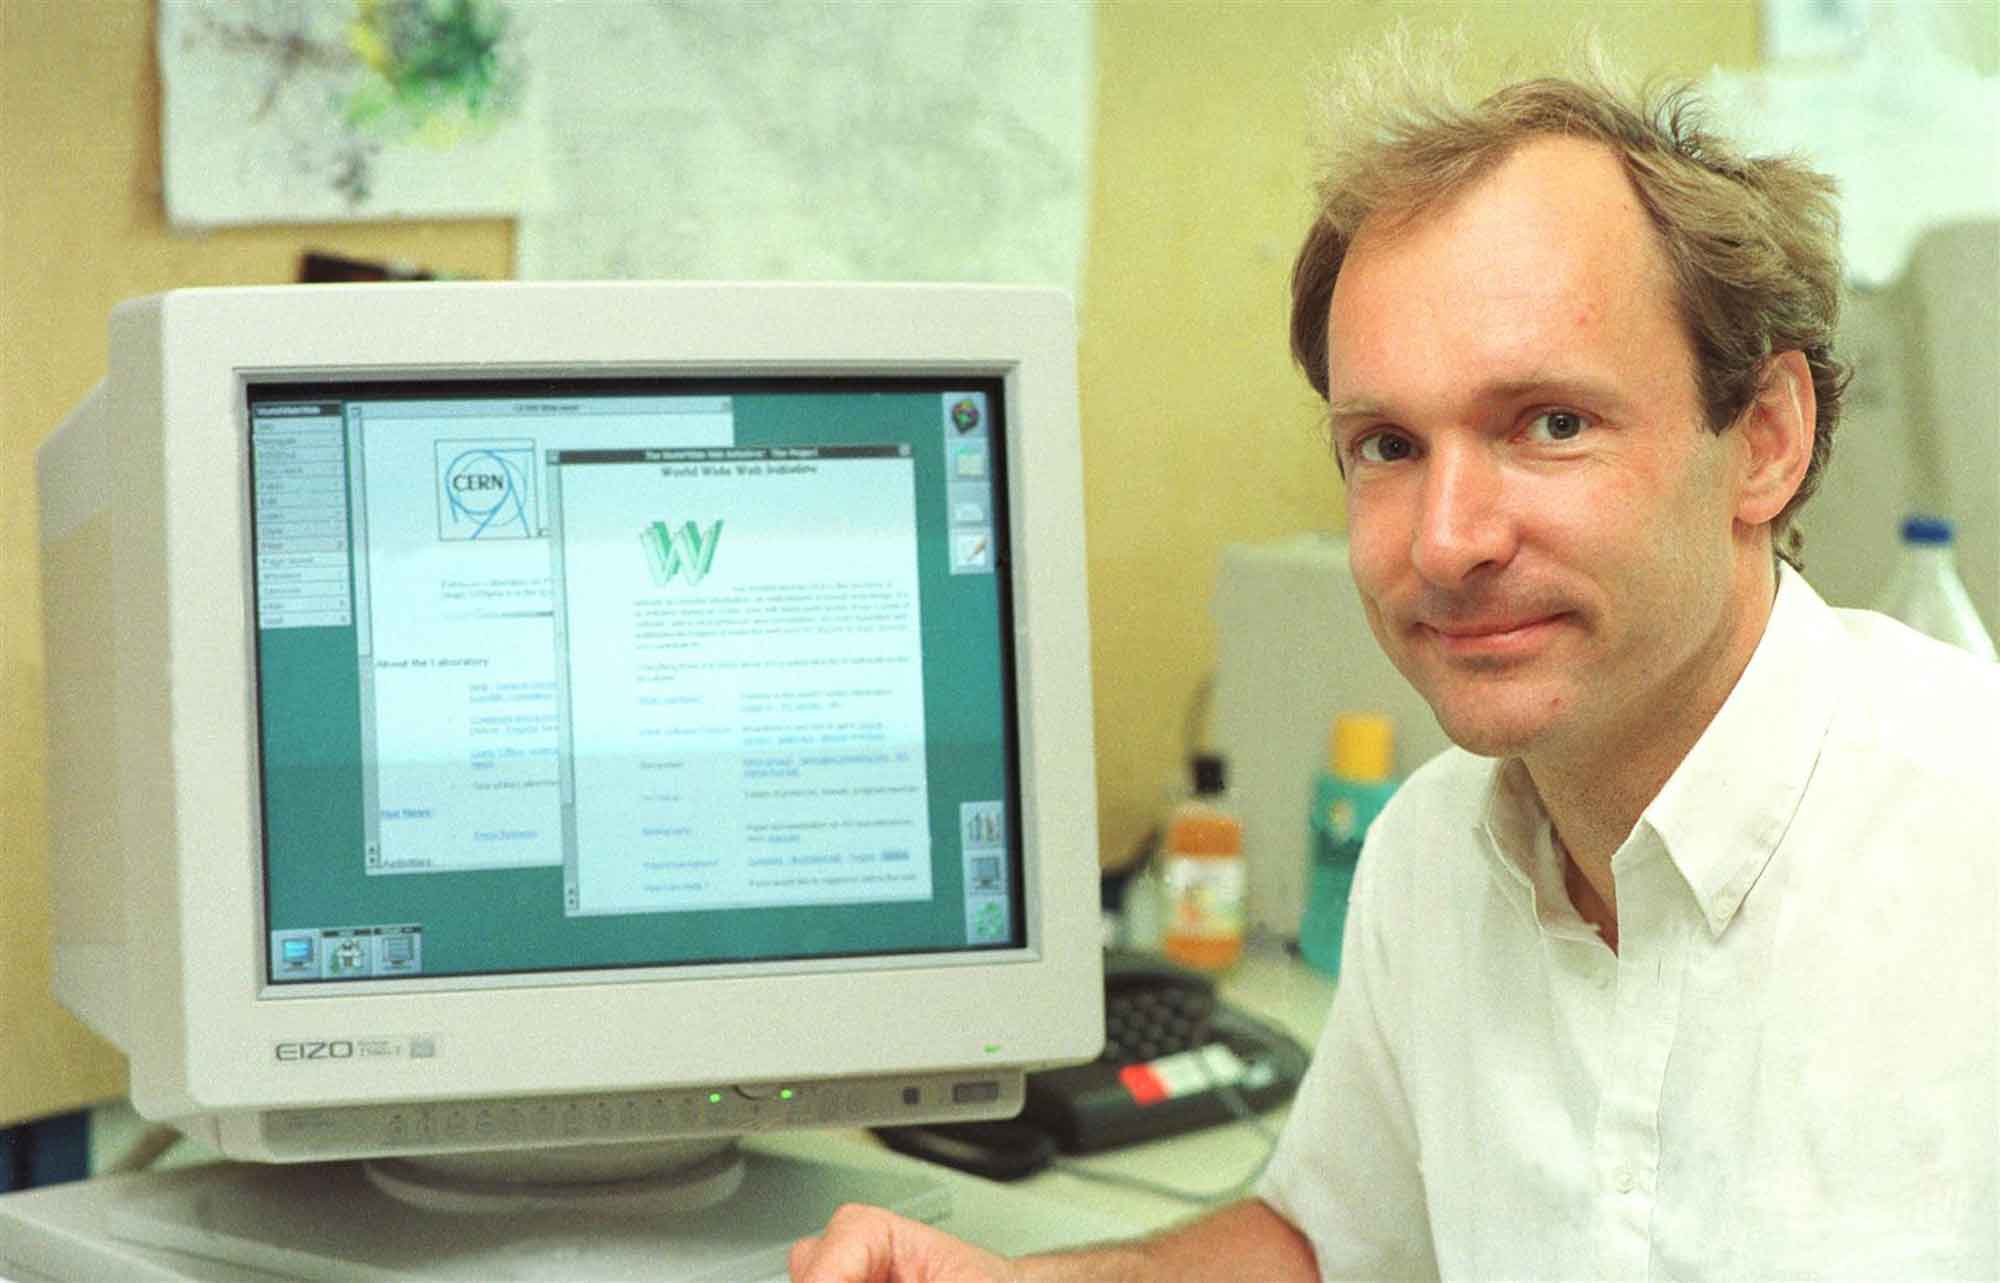 [Tim Berners-Lee at his desk in CERN, 1994]